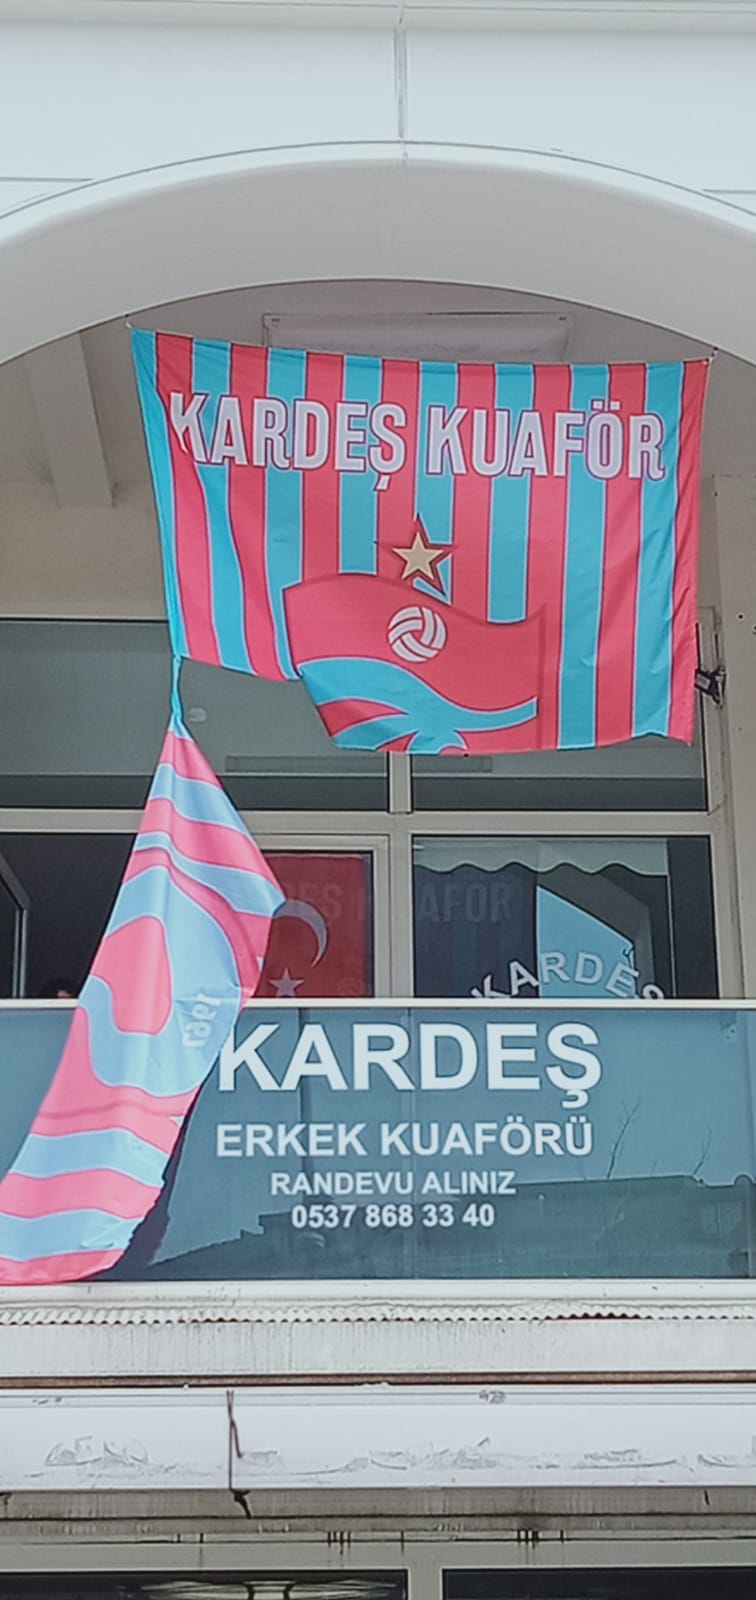 trabzonspor bayrağı büyükçekmece